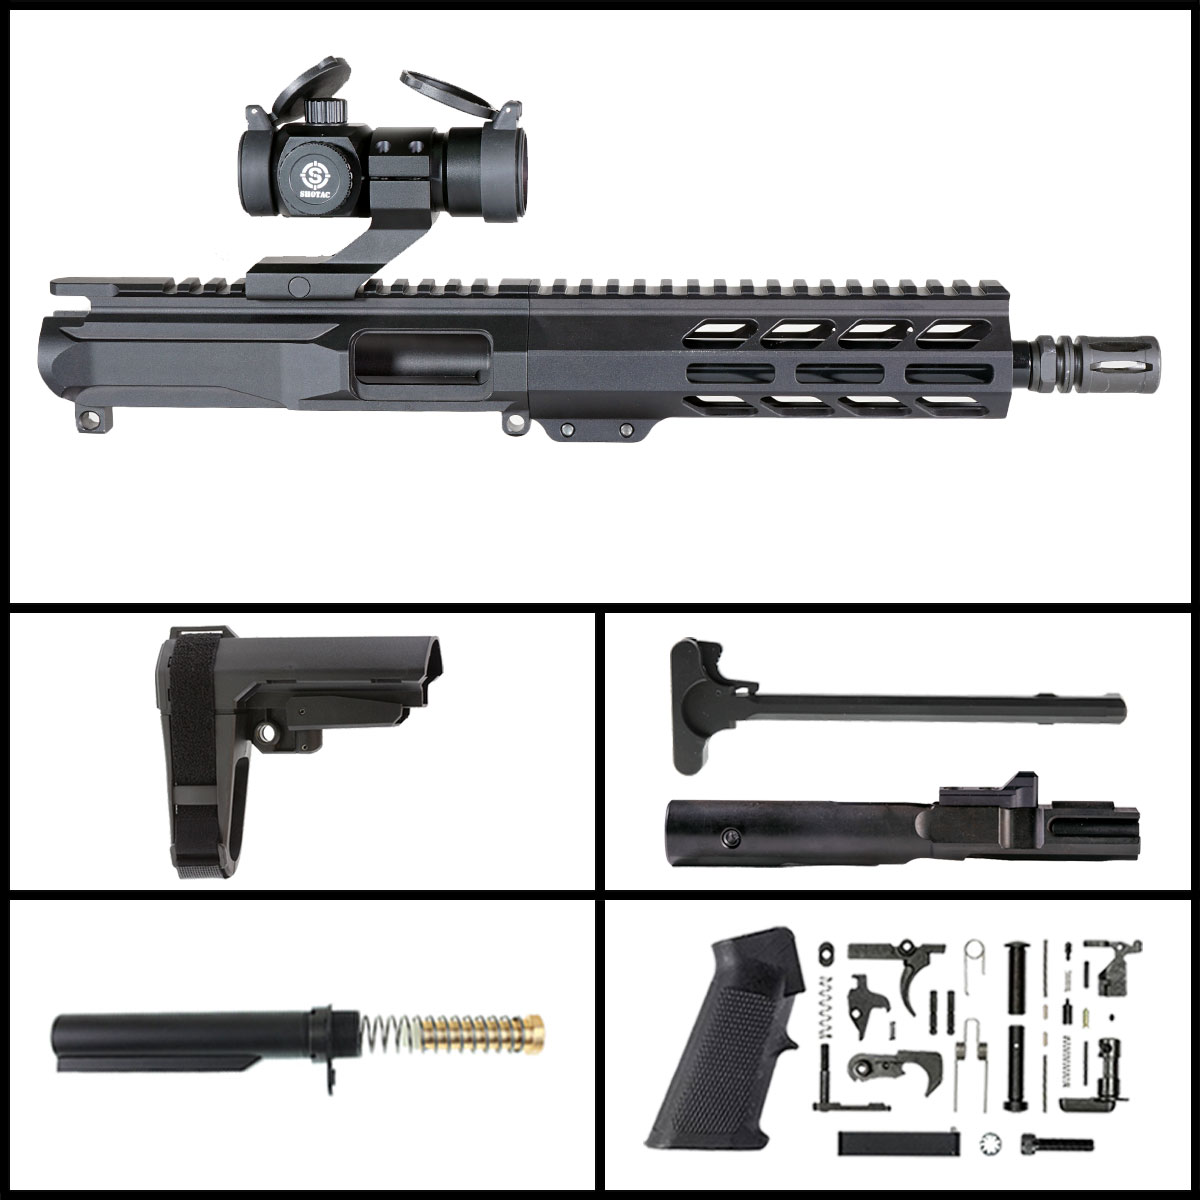 DTT 'Eternal Night Gen 2 w/ Shotac Cantilever' 8.5-inch AR-15 9mm Nitride Pistol Full Build Kit